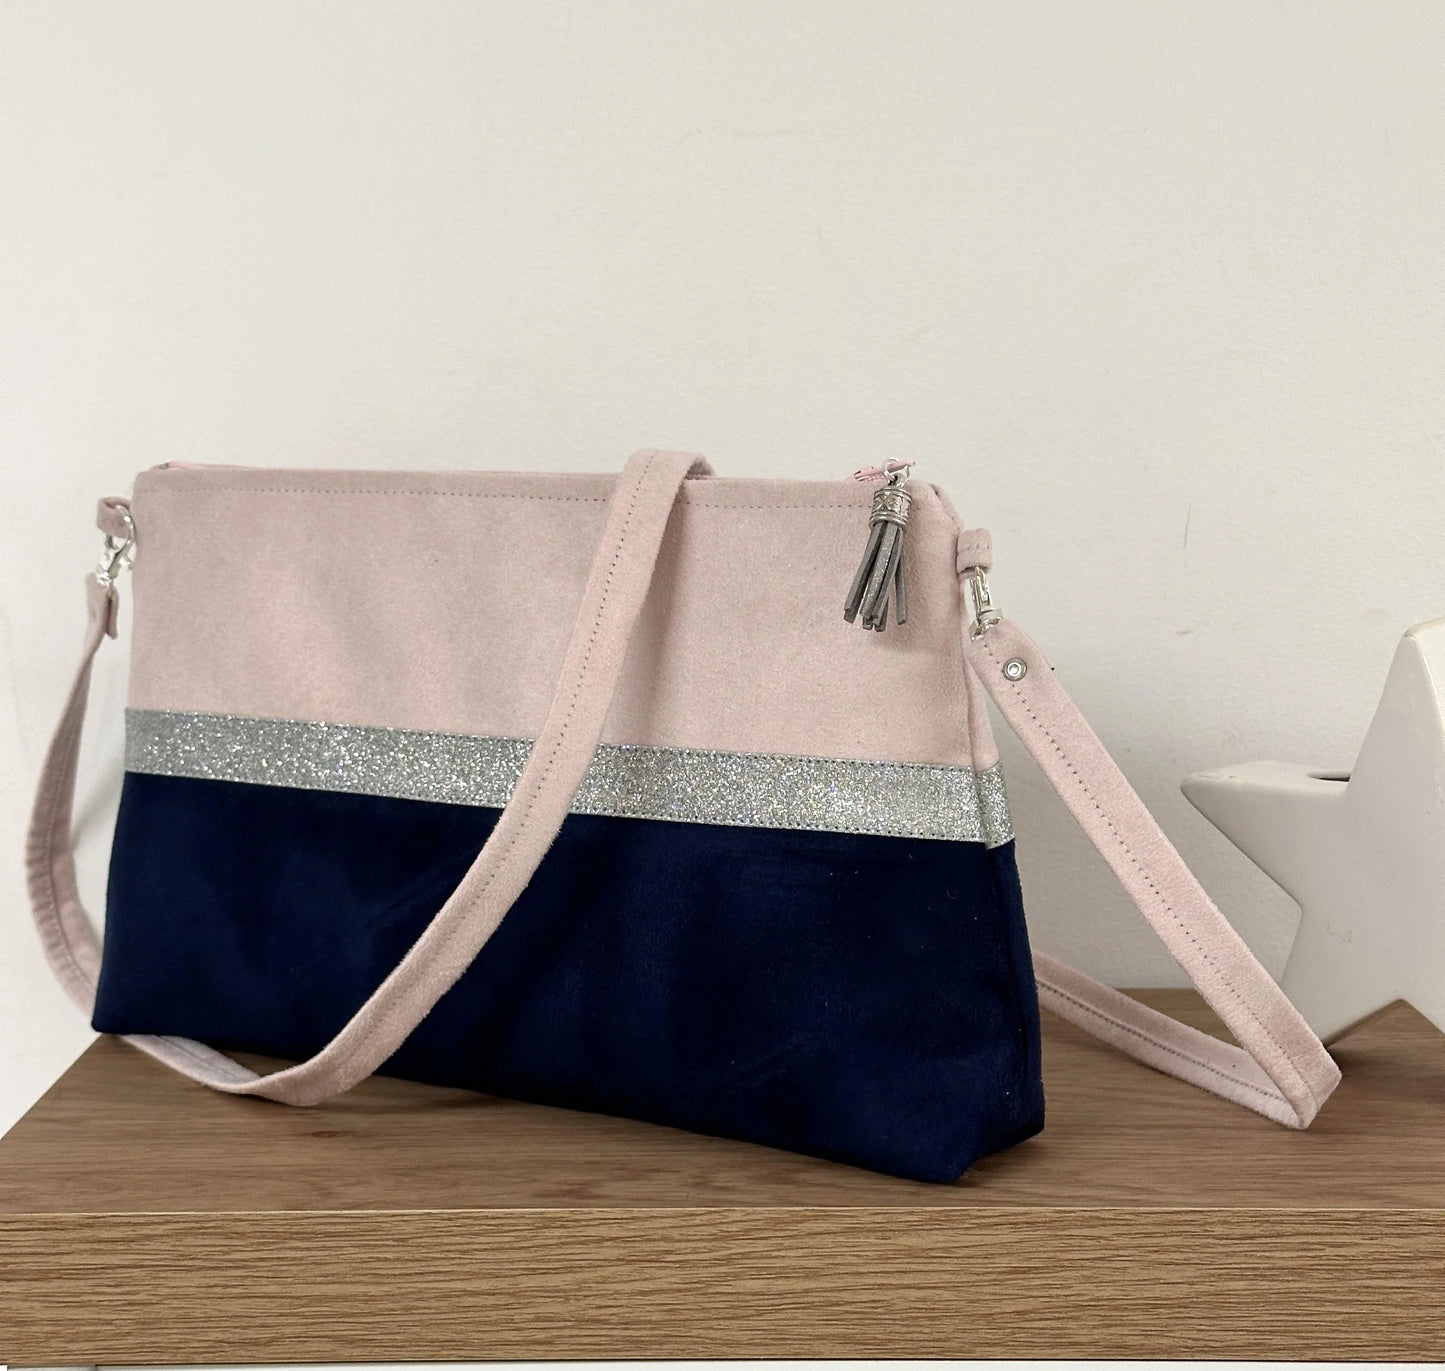 Le sac bandoulière Isa rose pale et bleu marine à paillettes argentées.